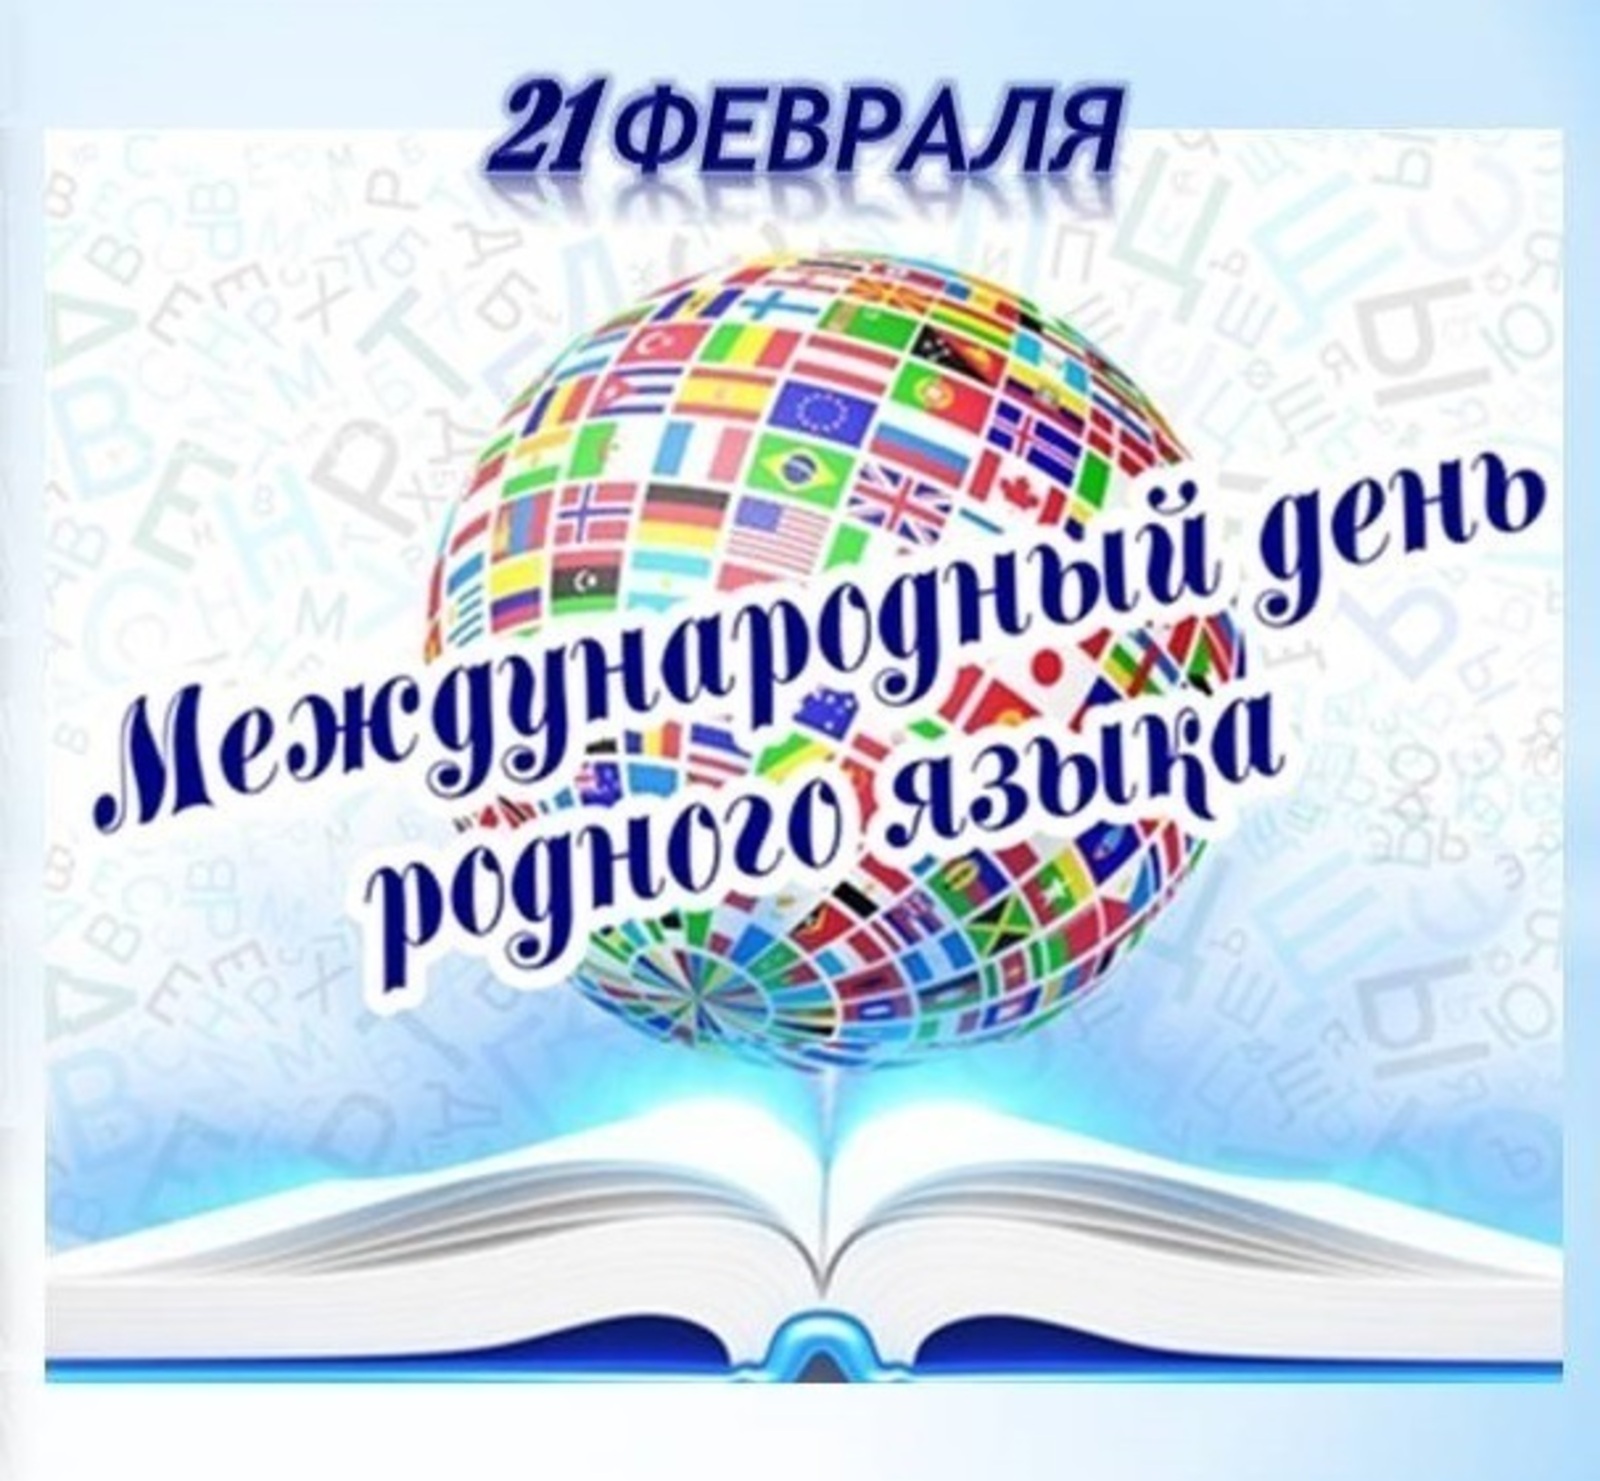 21 октября день узбекского языка рисунки